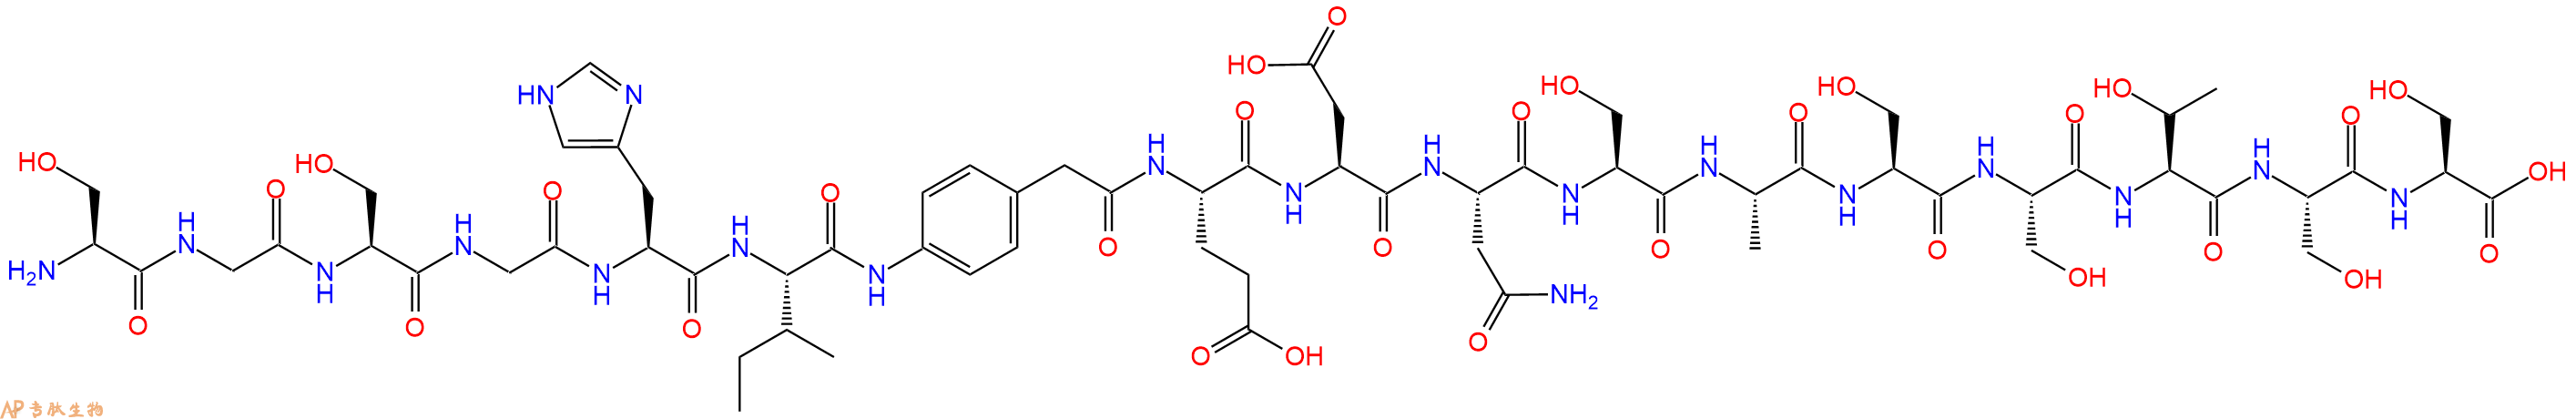 专肽生物产品H2N-Ser-Gly-Ser-Gly-His-Ile-Phg-Glu-Asp-Asn-Ser-Al